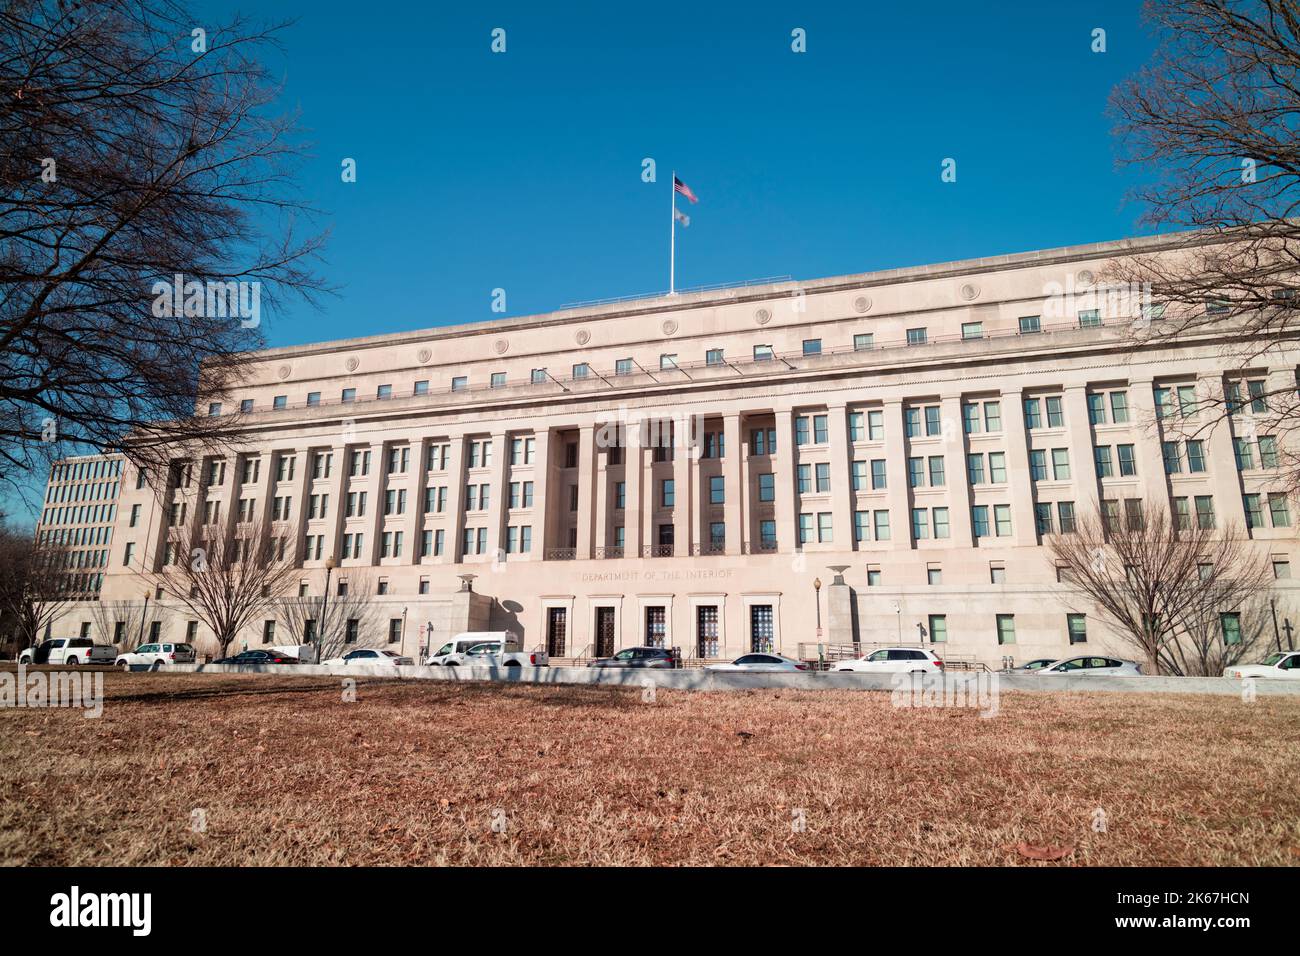 Le Stewart Lee Udall Department of the Interior Building à Washington, D.C., par une belle journée d'hiver. Prise de vue grand angle basse, ciel sans nuages, personne. Banque D'Images